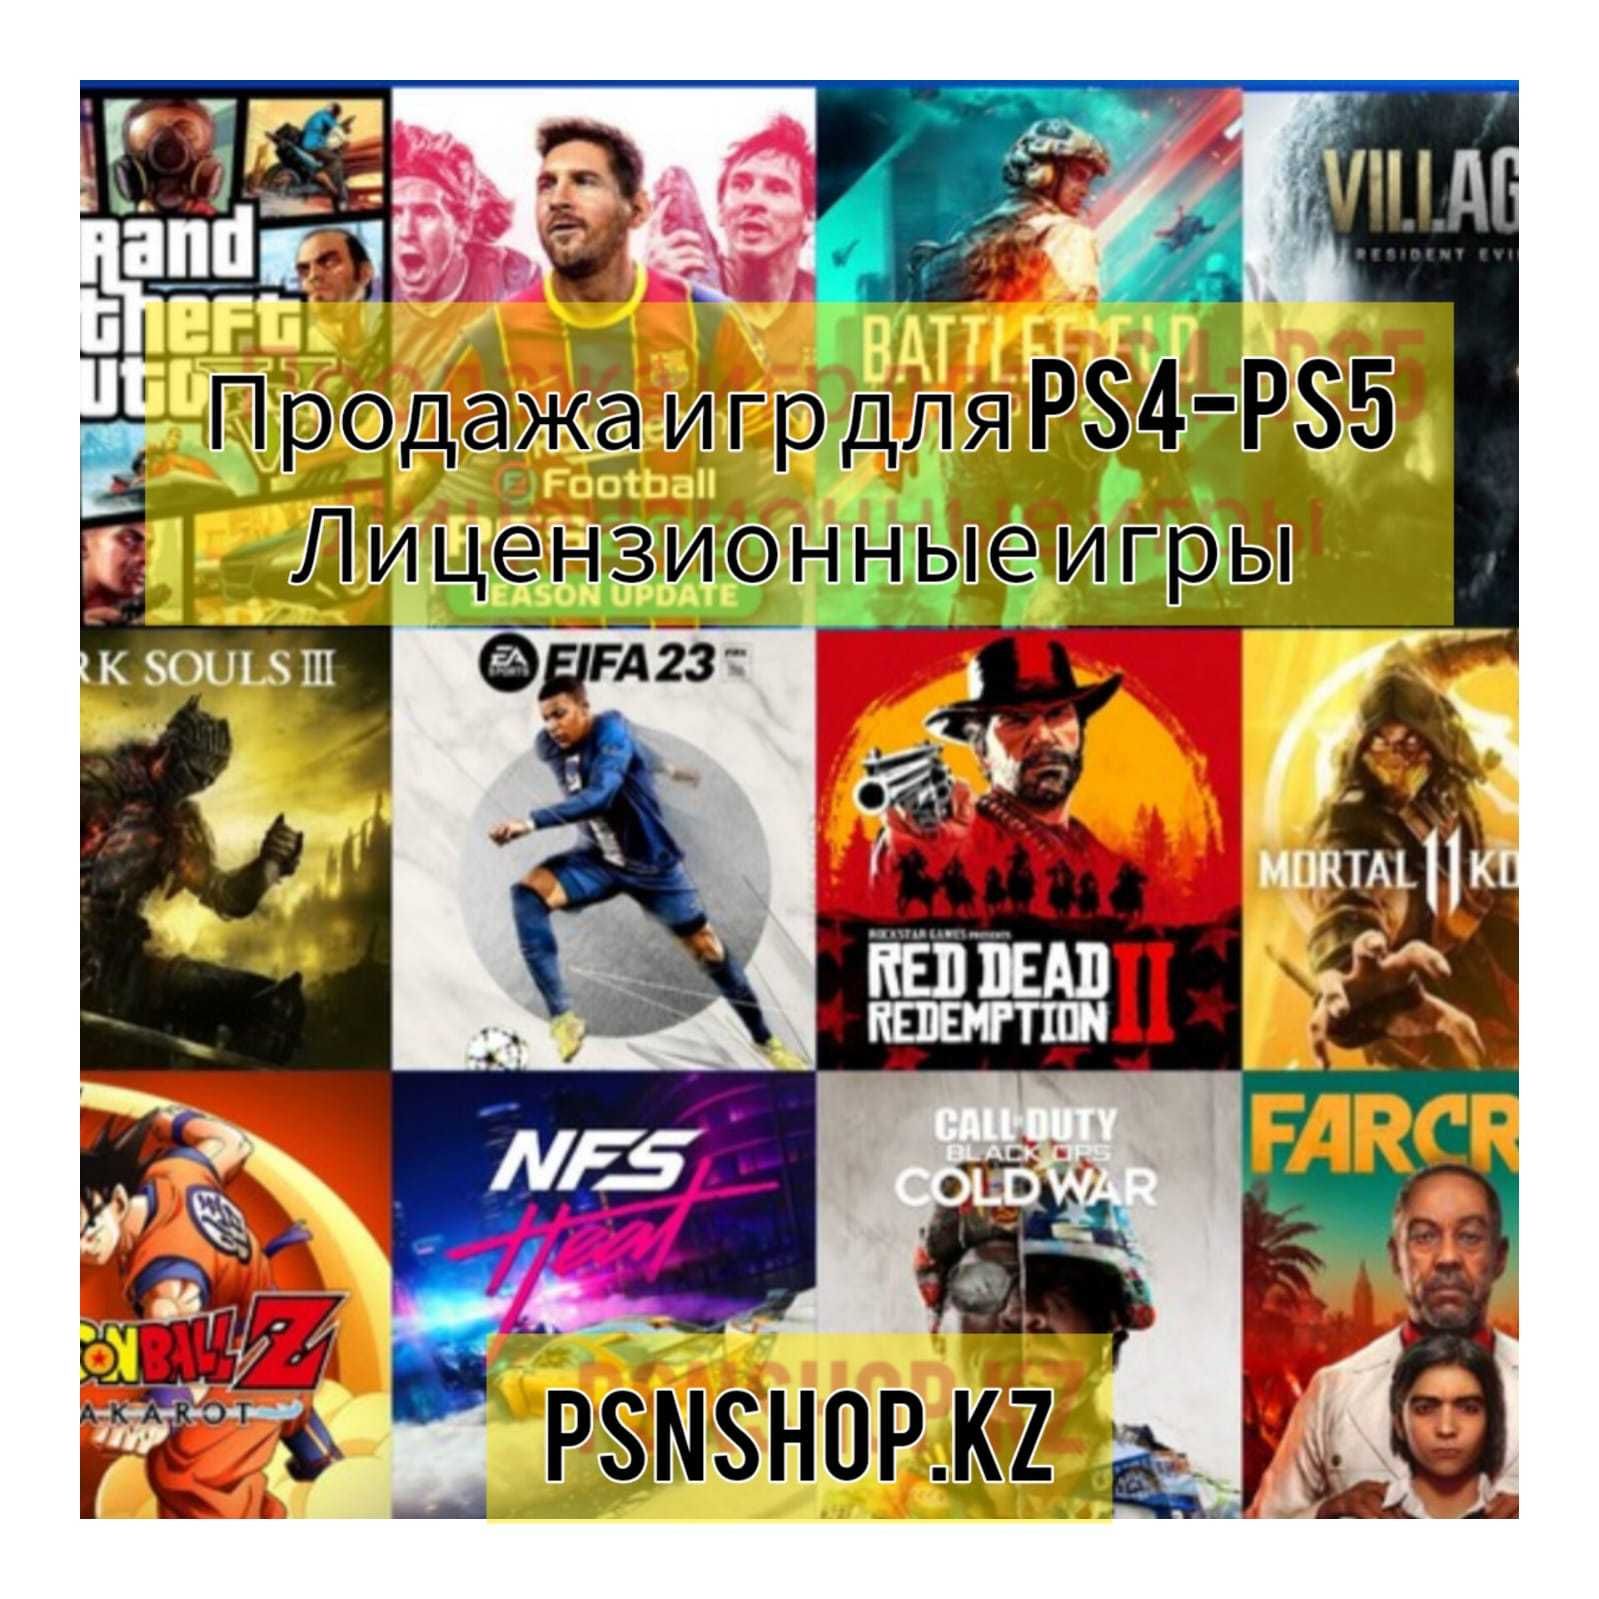 Продажа лицензионных игр на PS4, PS5 FIFA 22,Mortal 11 UFC 4 пс4 пс5